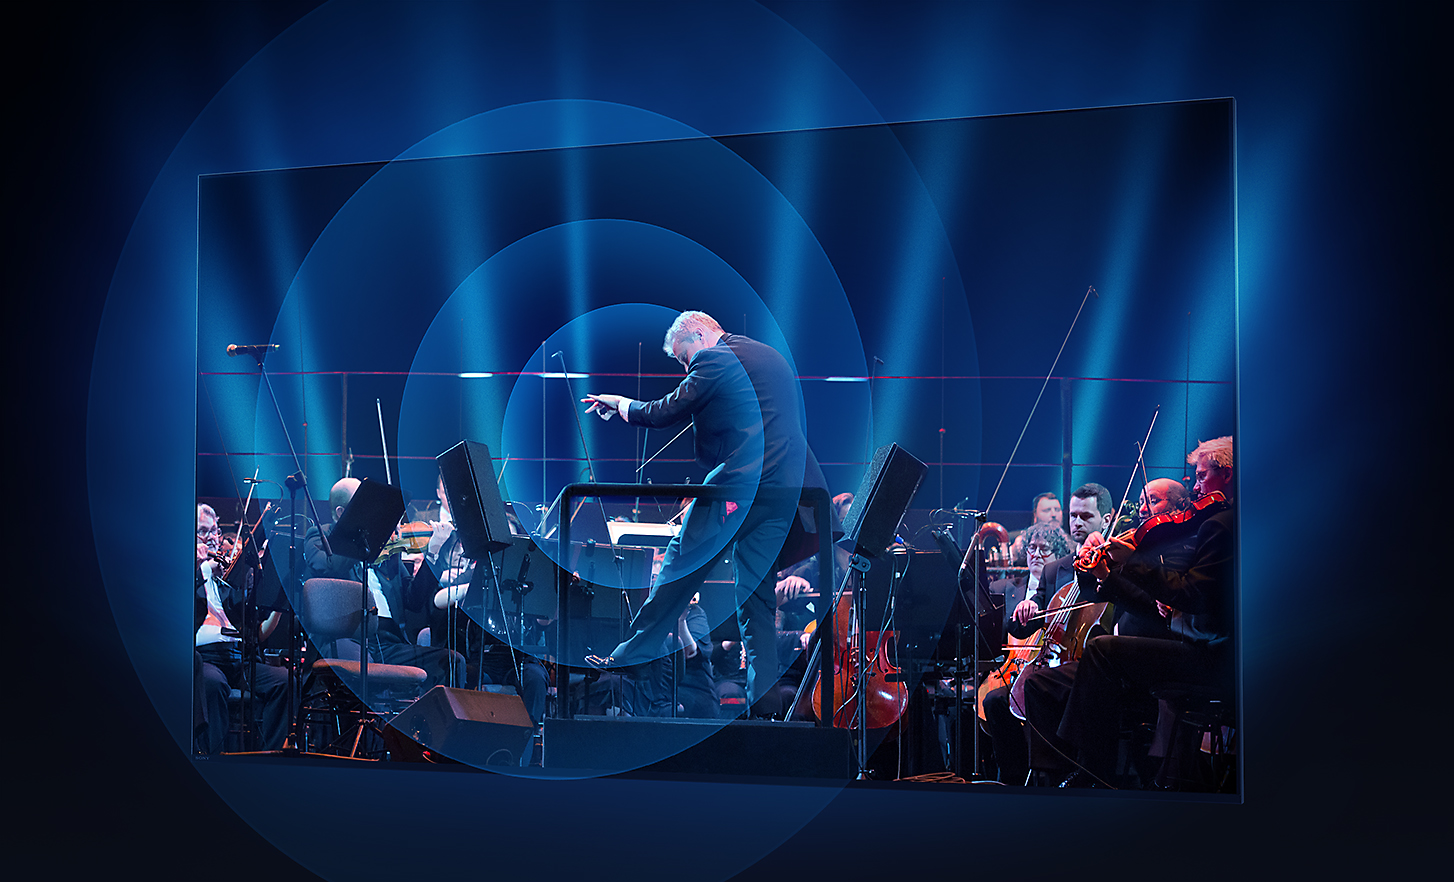 BRAVIA-TV-skjerm som viser dirigent og orkester med lydbølger som strømmer ut i konsentriske ringer fra midten av skjermen